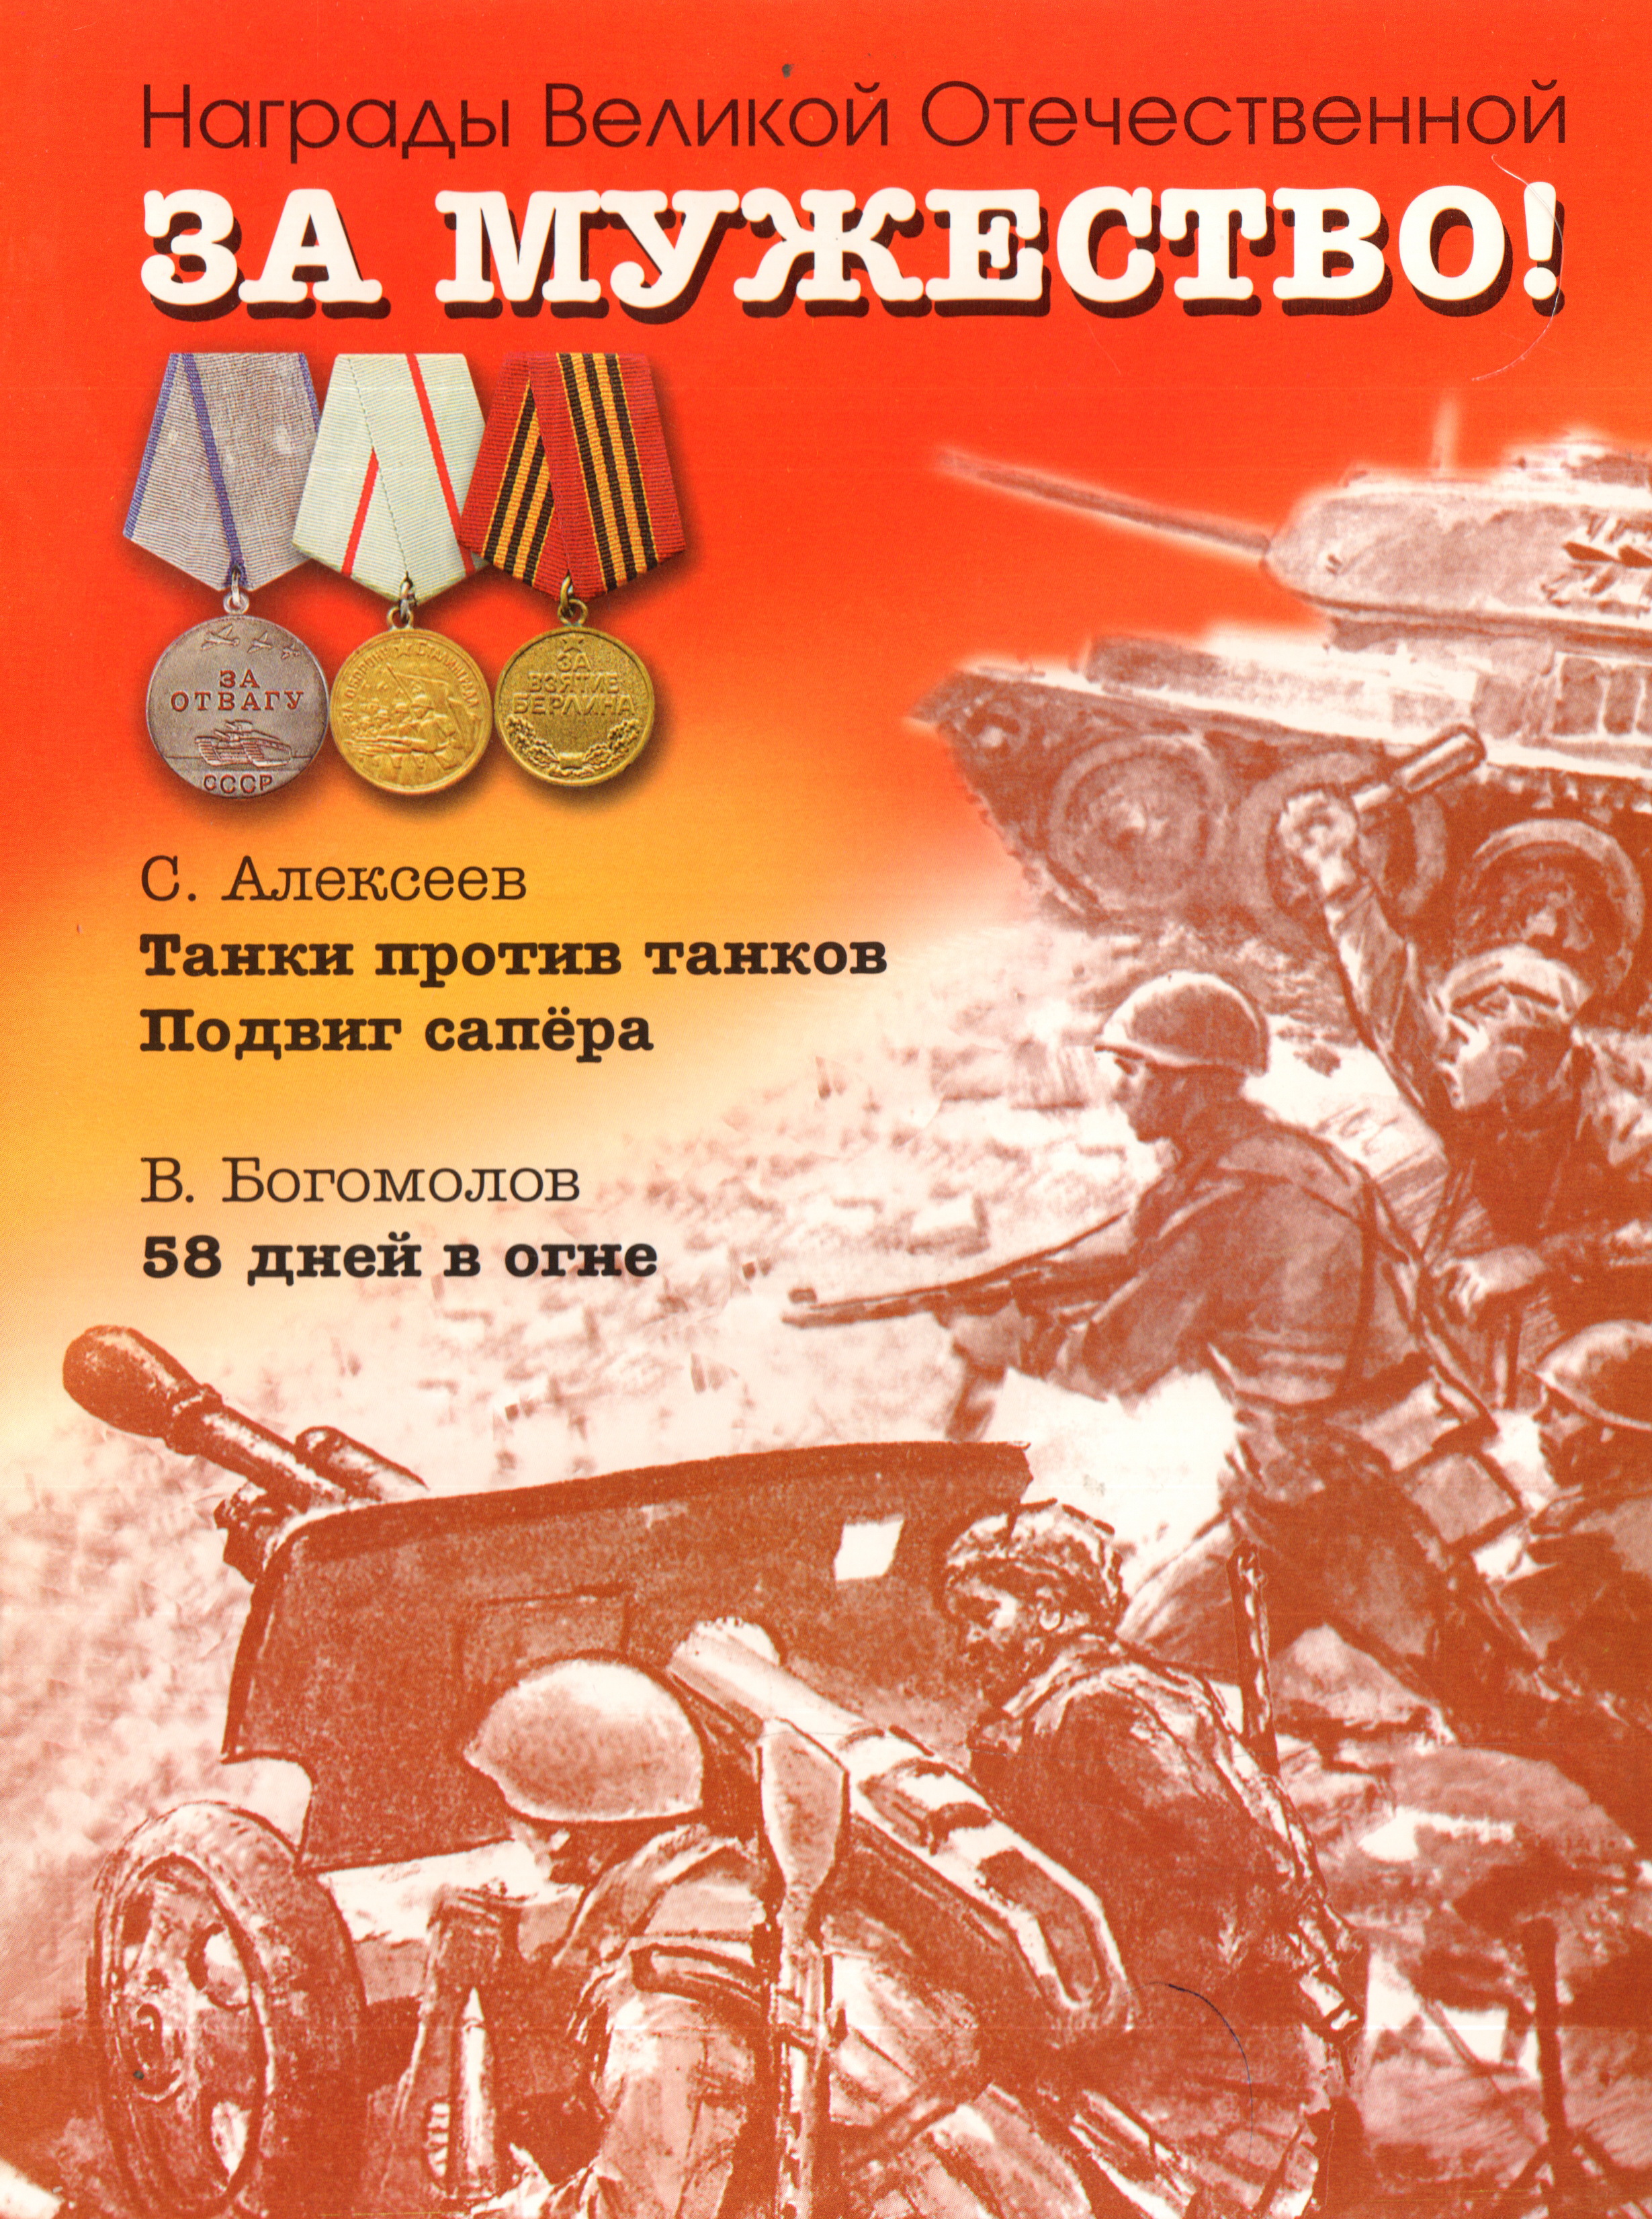 Книги с Алексеева о Великой Отечественной войне